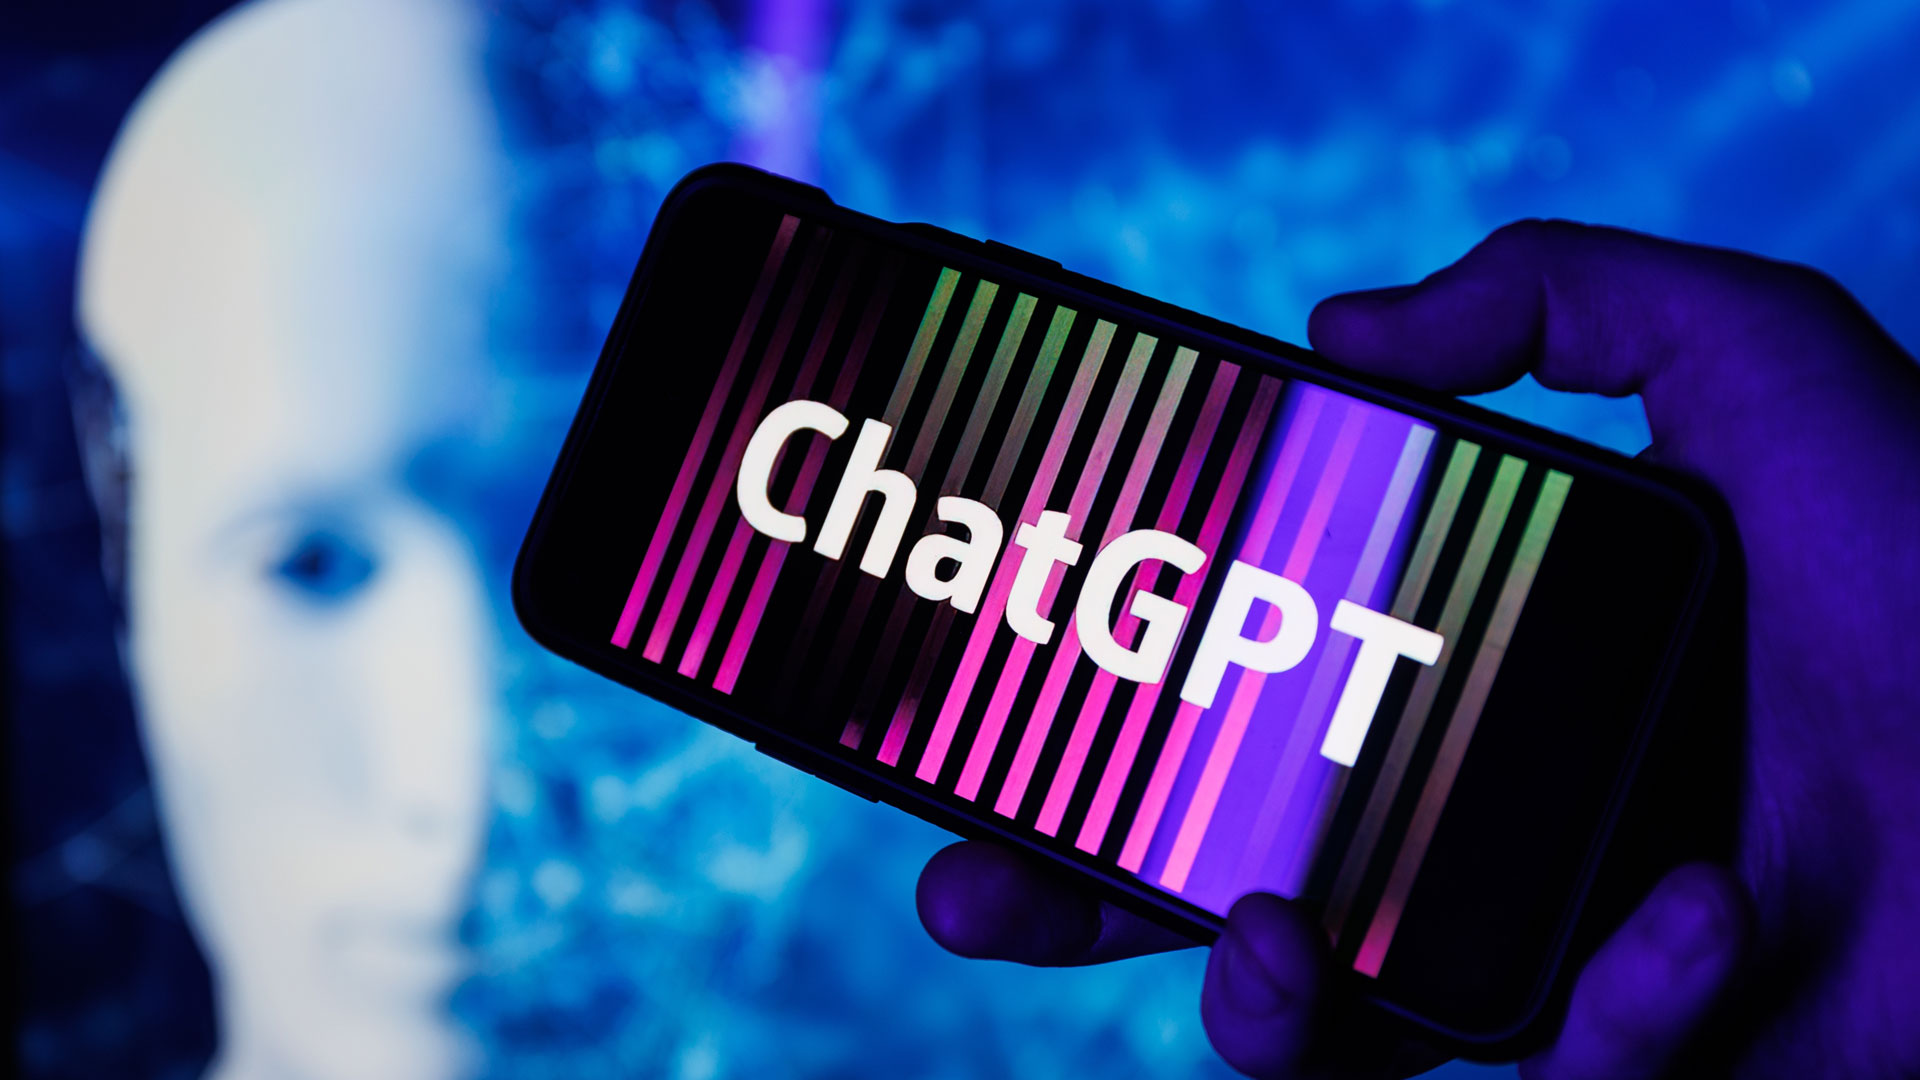 ChatGPT, возможно, планирует заменить Google Assistant на вашем телефоне Android в преддверии запуска своего знаменательного магазина ботов.